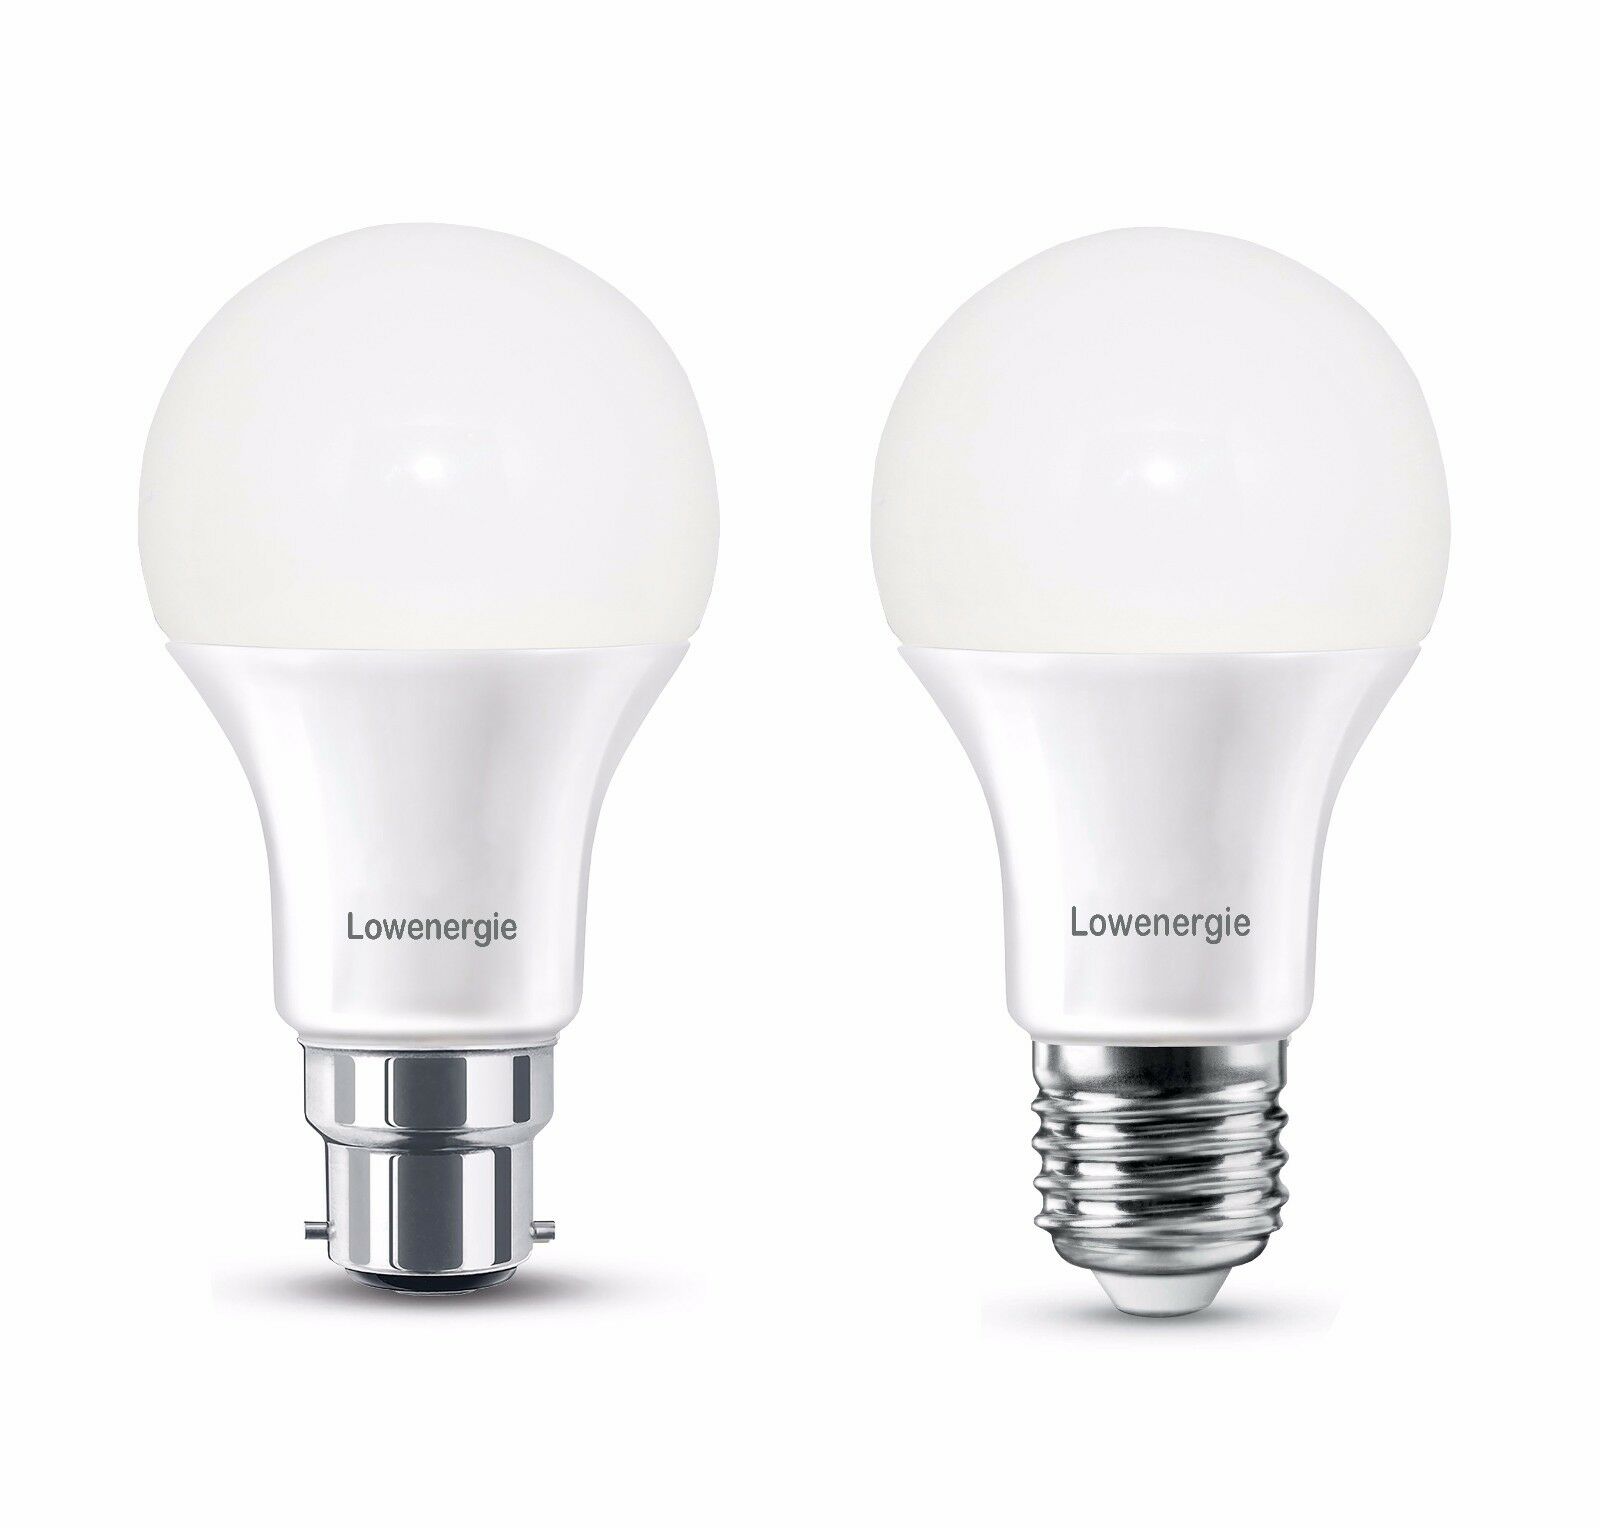 DiCUNO Ampoule LED B22, 15W lampe baïonnette équivalent 100W halogène,  Blanc chaud 2700K, 1350LM, CRI 90, Non-dimmable, Ampoule LED standard  baïonnette B22 pour l'éclairage domestique, 6 Pièces : :  Luminaires et Éclairage